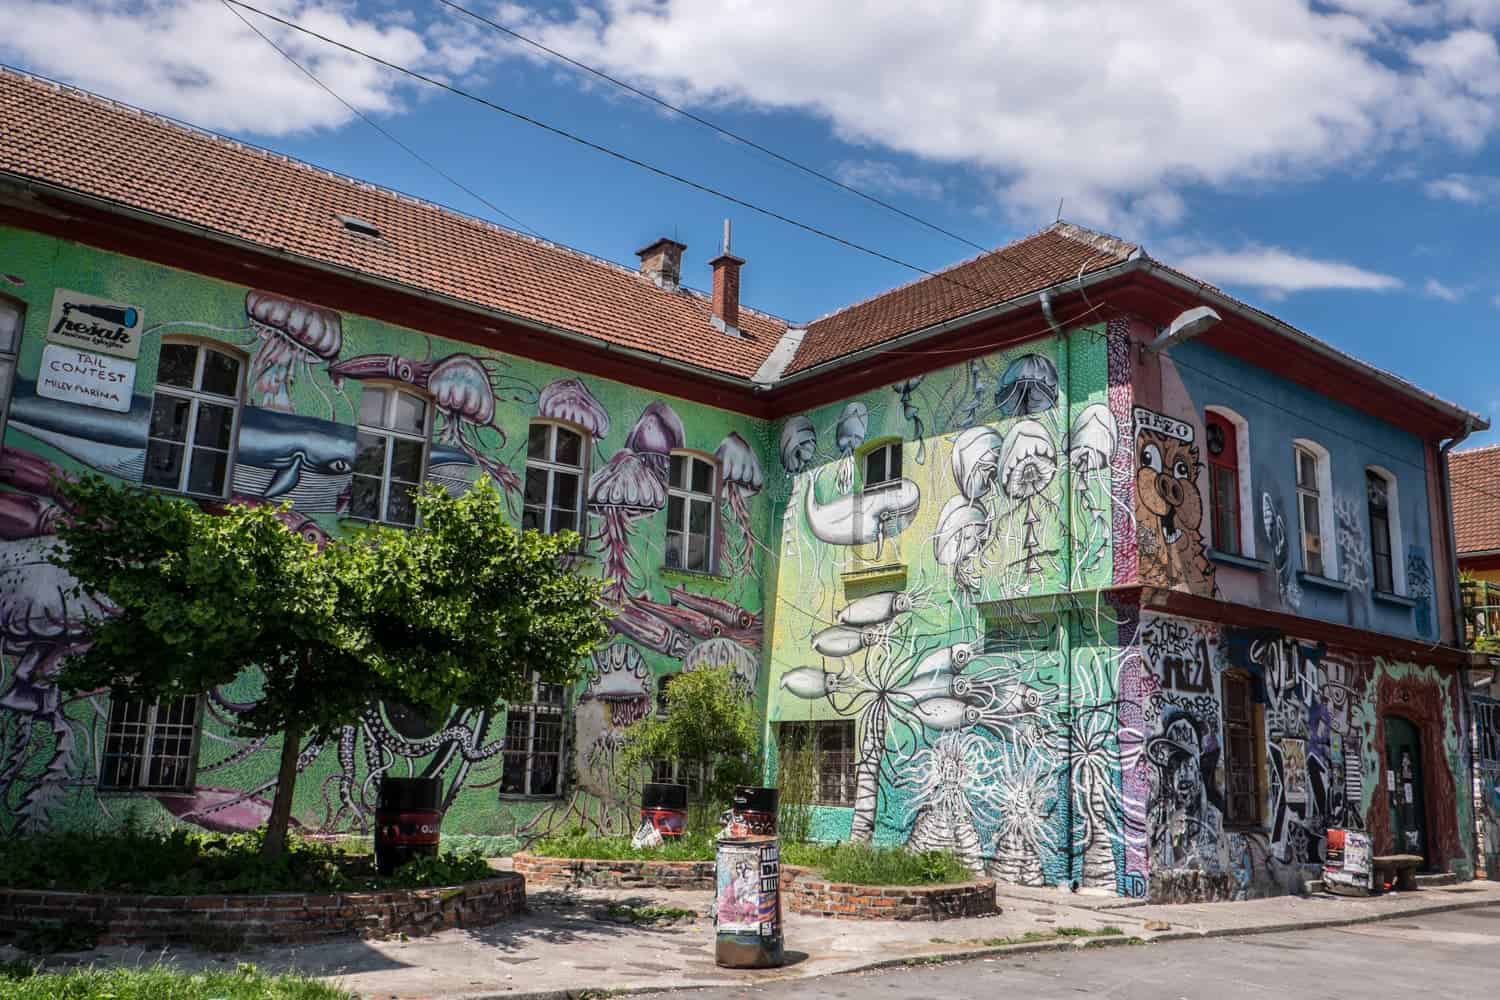 Exterior building art in Metelkova in Ljubljana, Slovenia